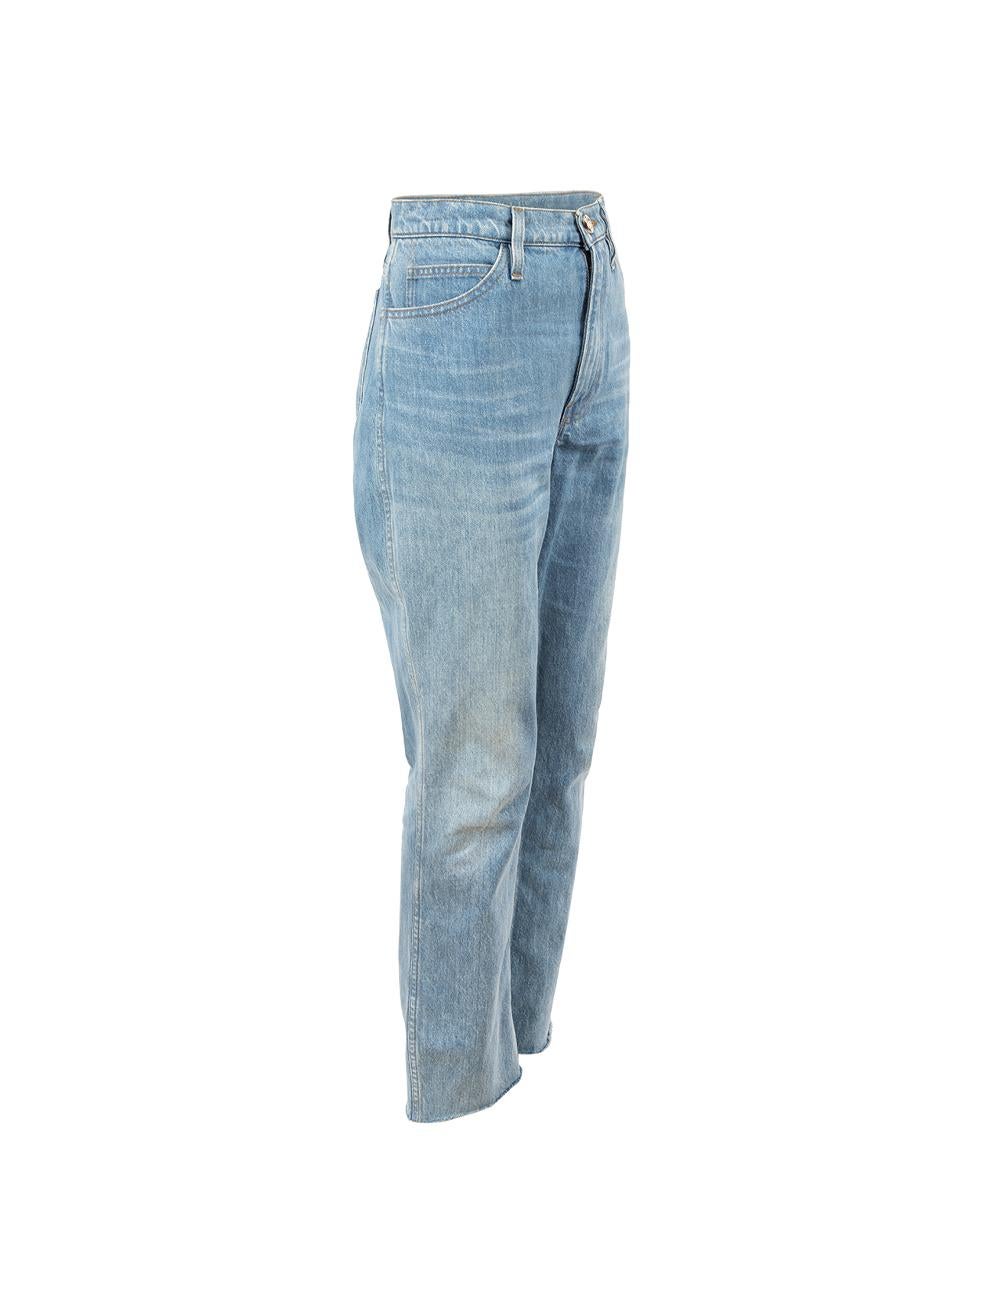 CONDIT ist sehr gut. Die Jeans weisen nur minimale Abnutzungserscheinungen auf. Minimale Abnutzungserscheinungen am rechten Bein mit schwachen Flecken auf diesem gebrauchten FRAME x Ritz Designer Wiederverkaufsartikel.